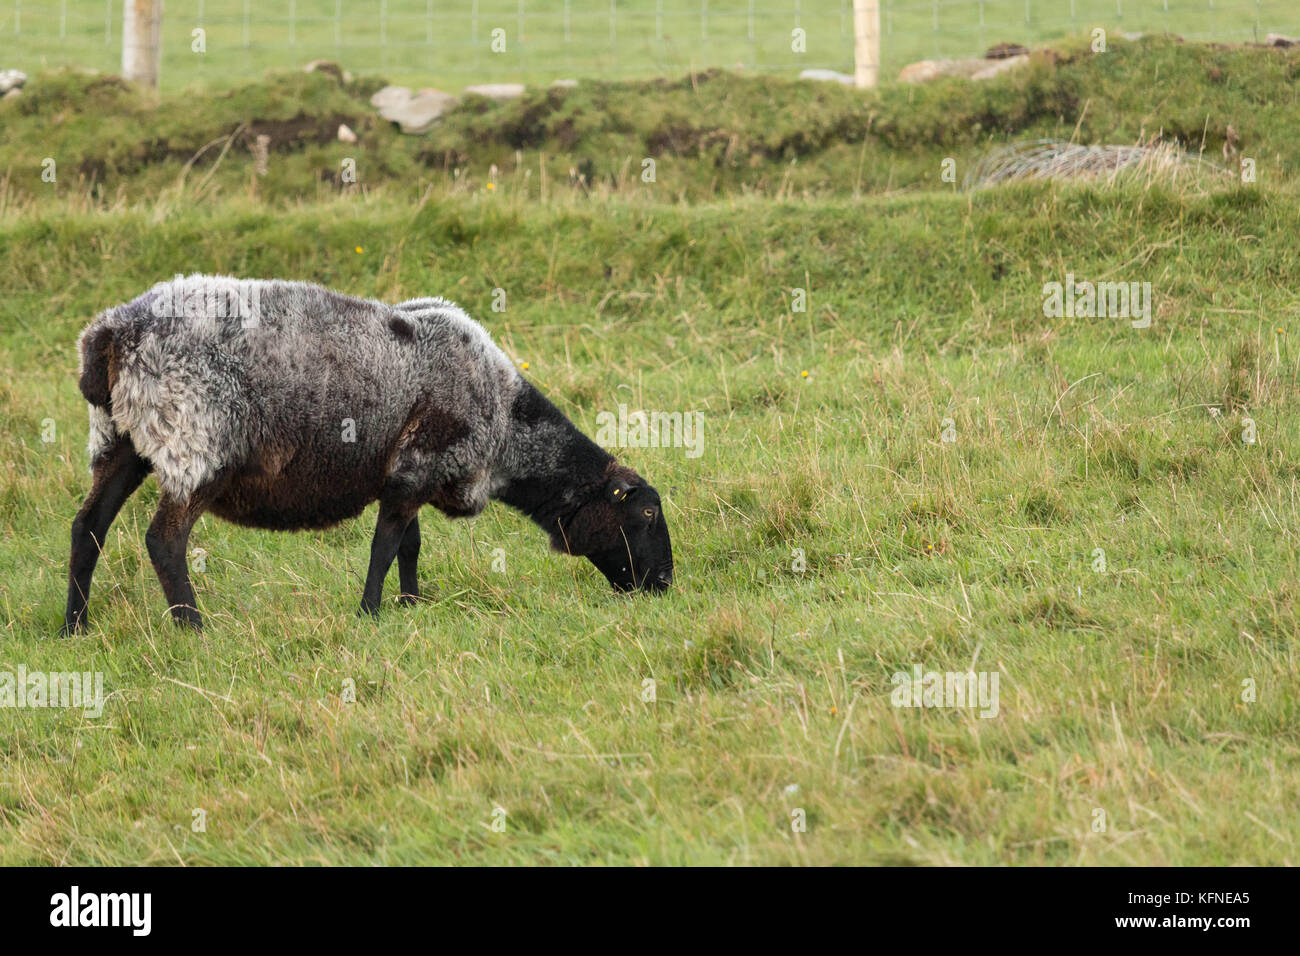 Des moutons paissant dans le comté de Donegal, Irlande Banque D'Images